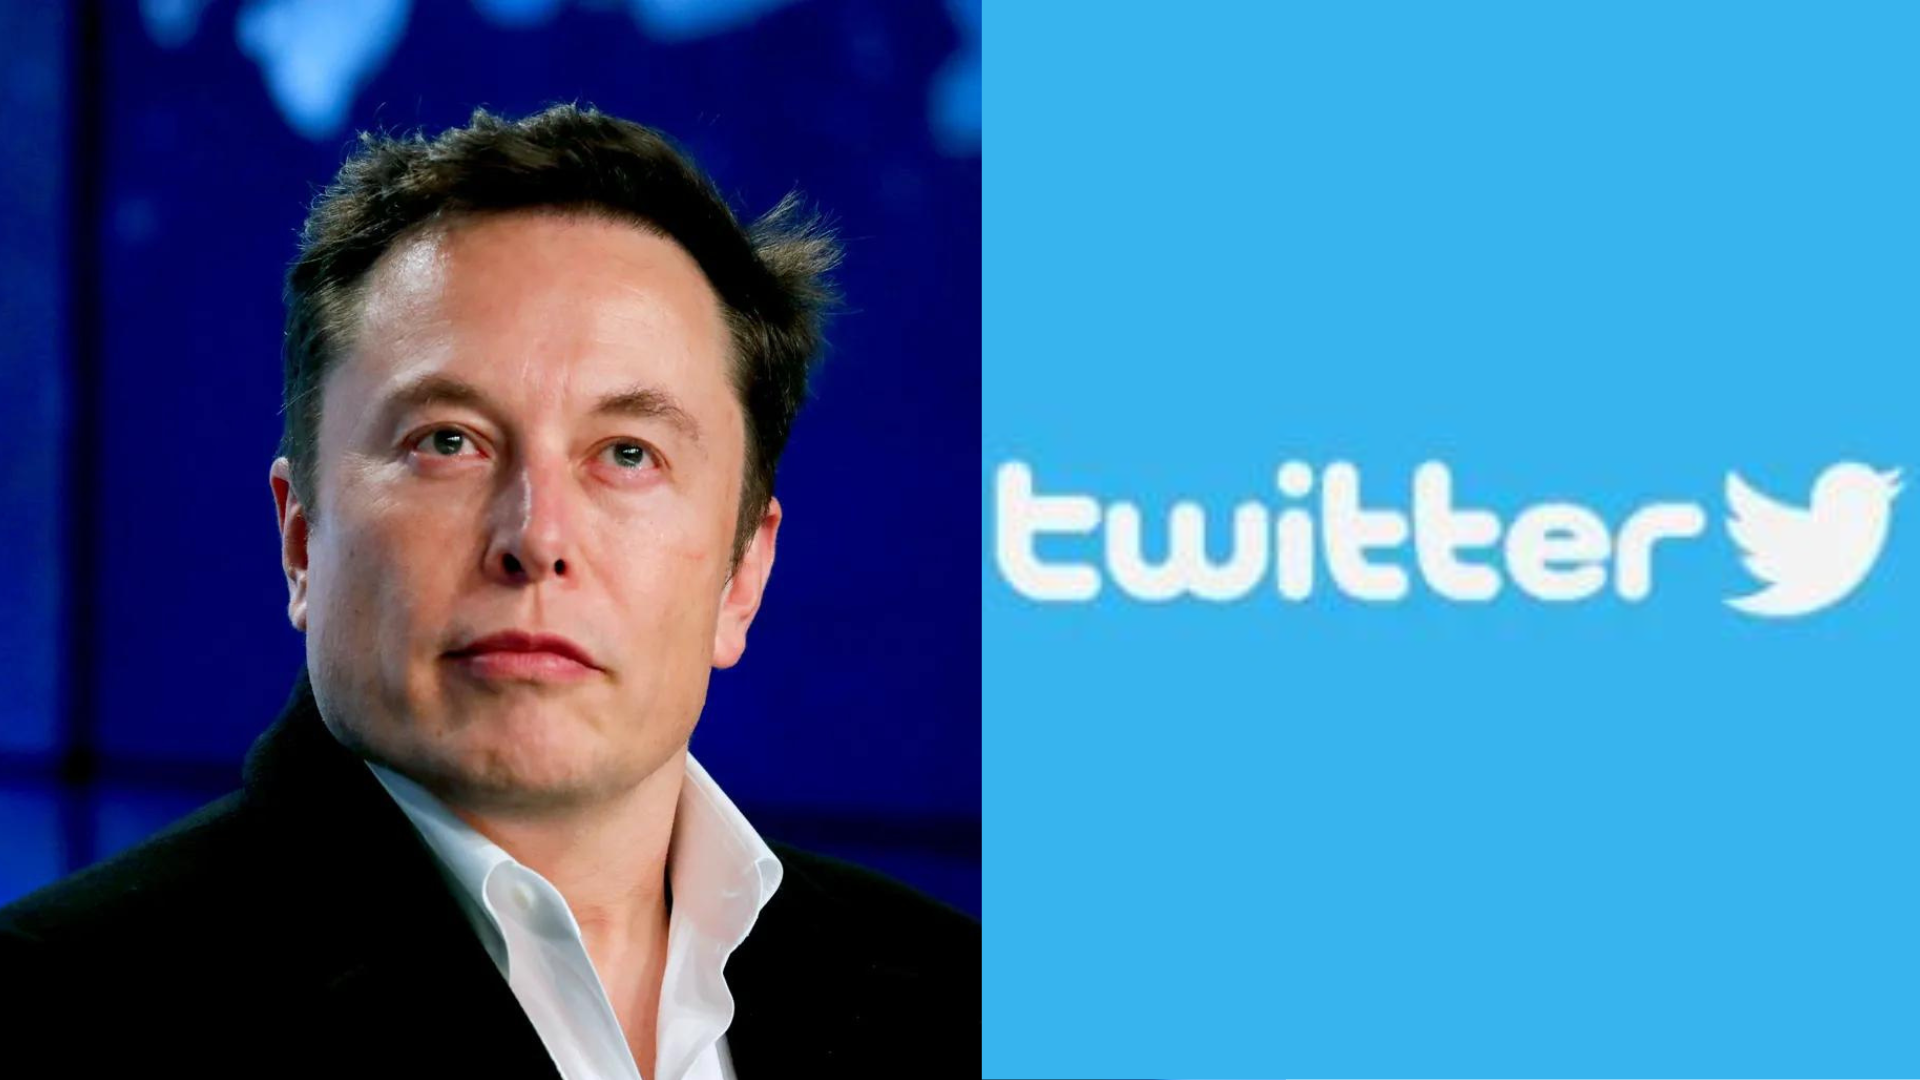 Empleados de Twitter radican demanda de clase contra Elon Musk por despidos injustos